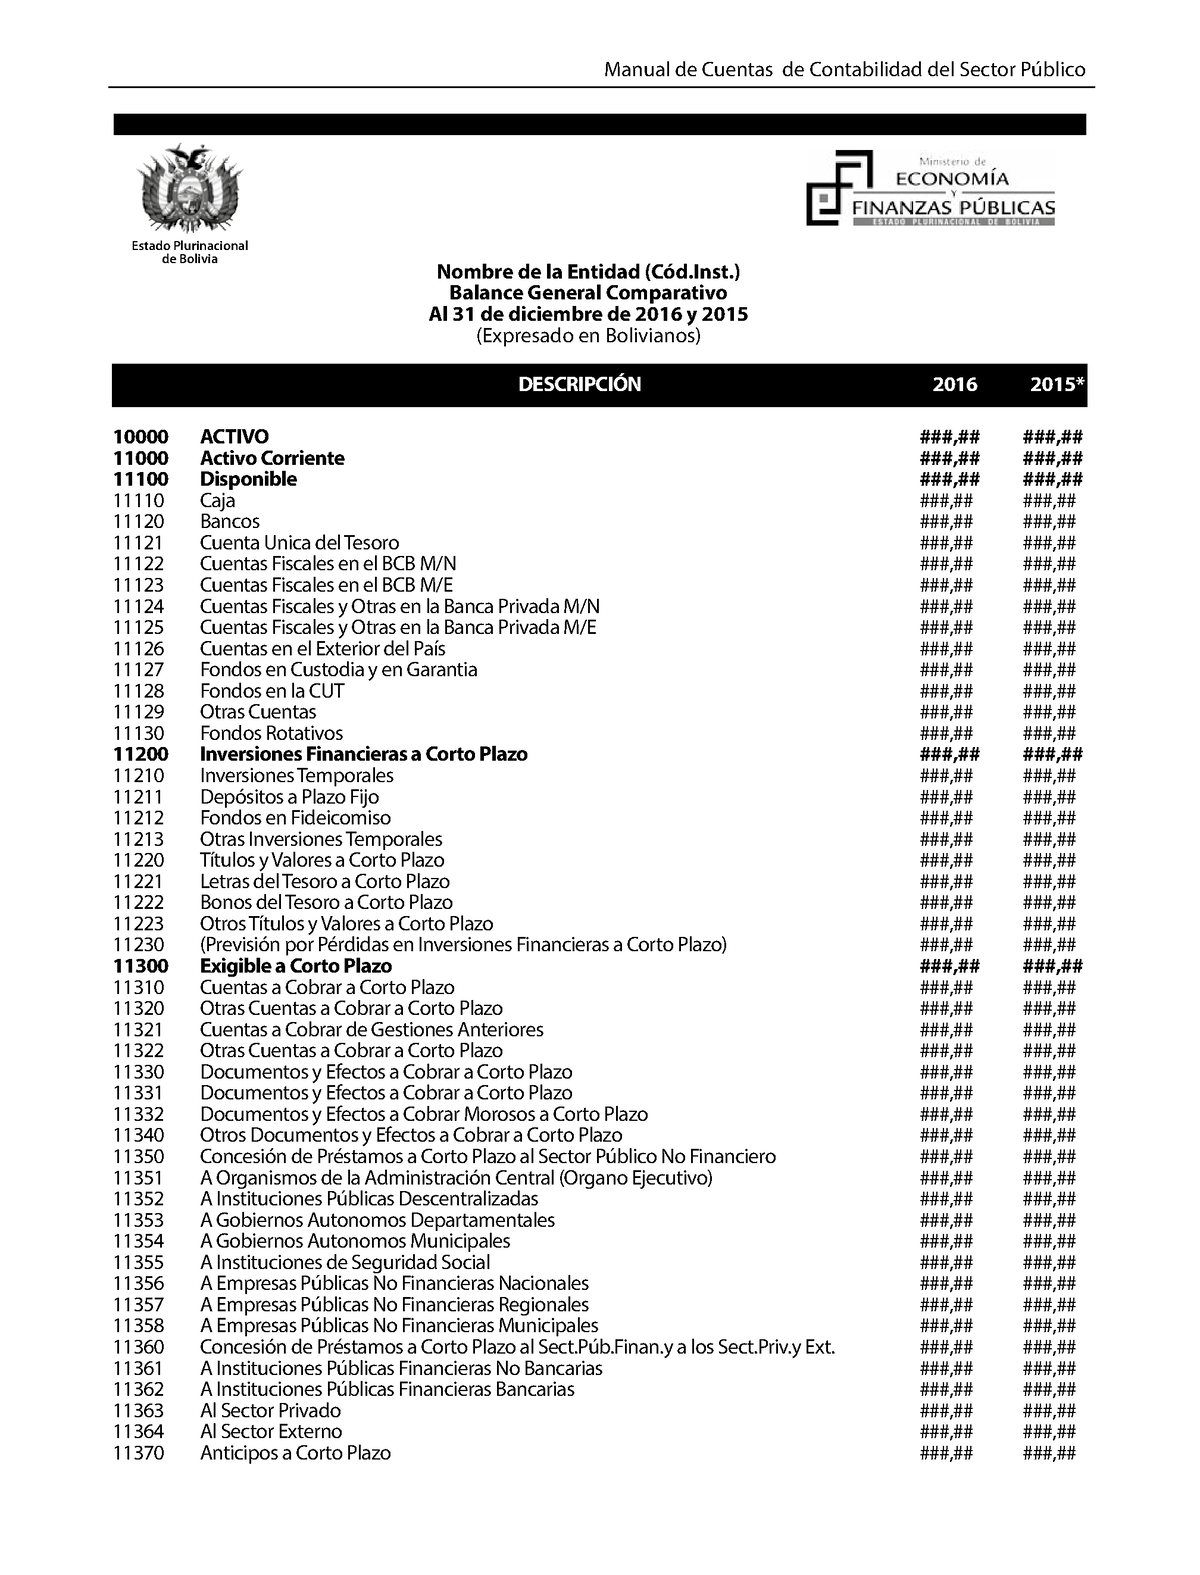 Plan De Cuentas Unico Manual De Cuentas De Contabilidad Del Sector Público 10000 Activo 0558